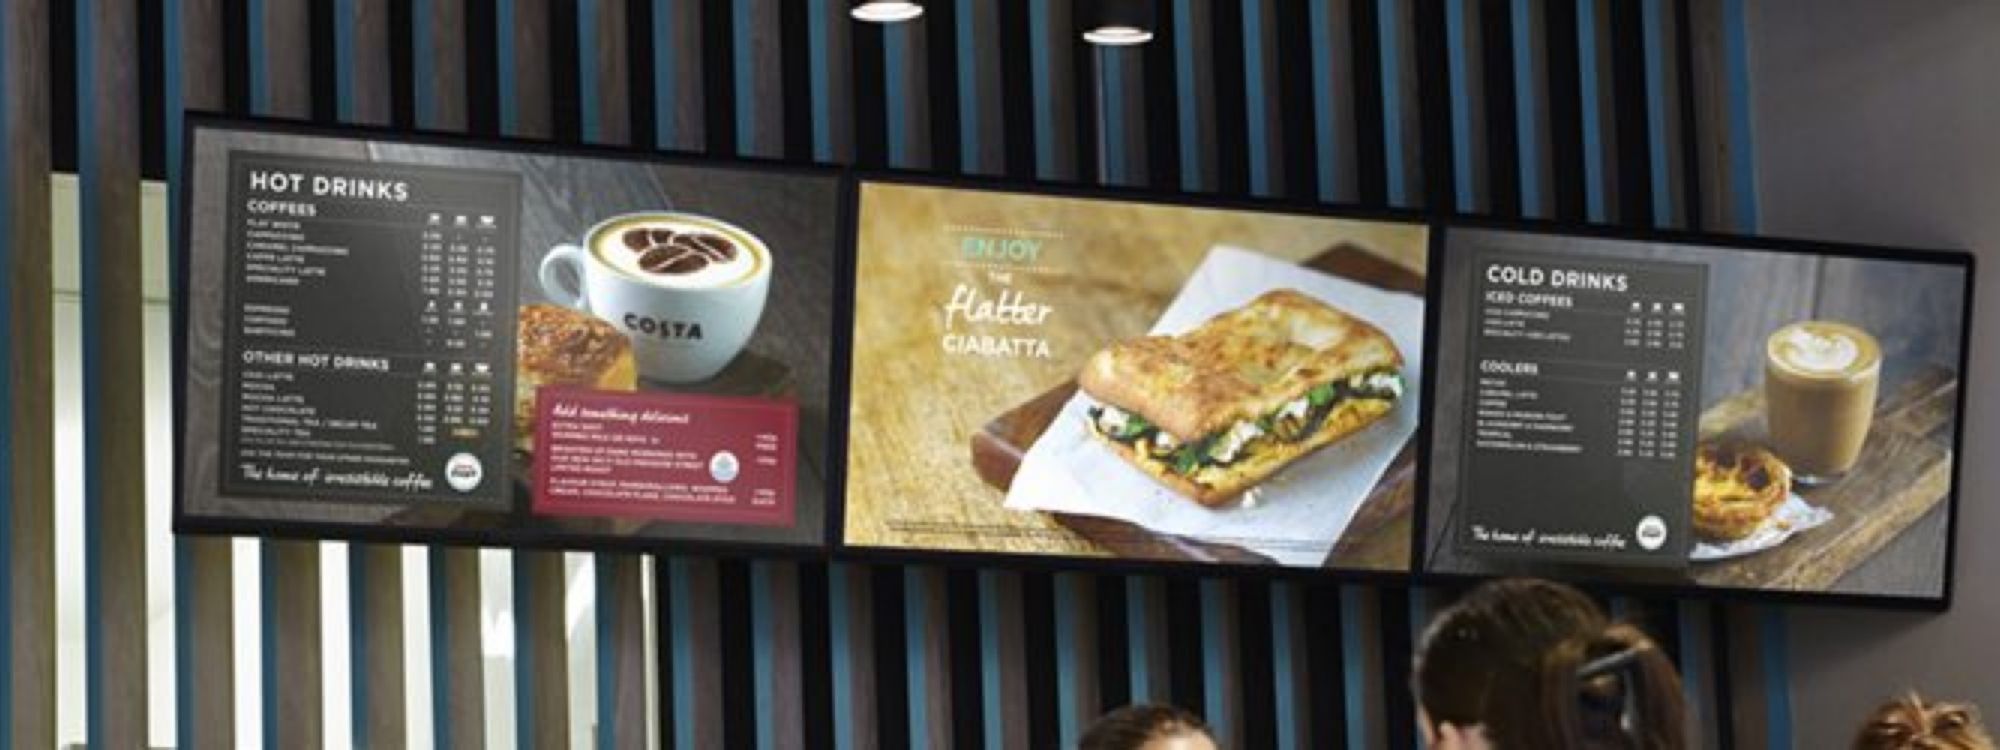 digital menu boards screens in coffee